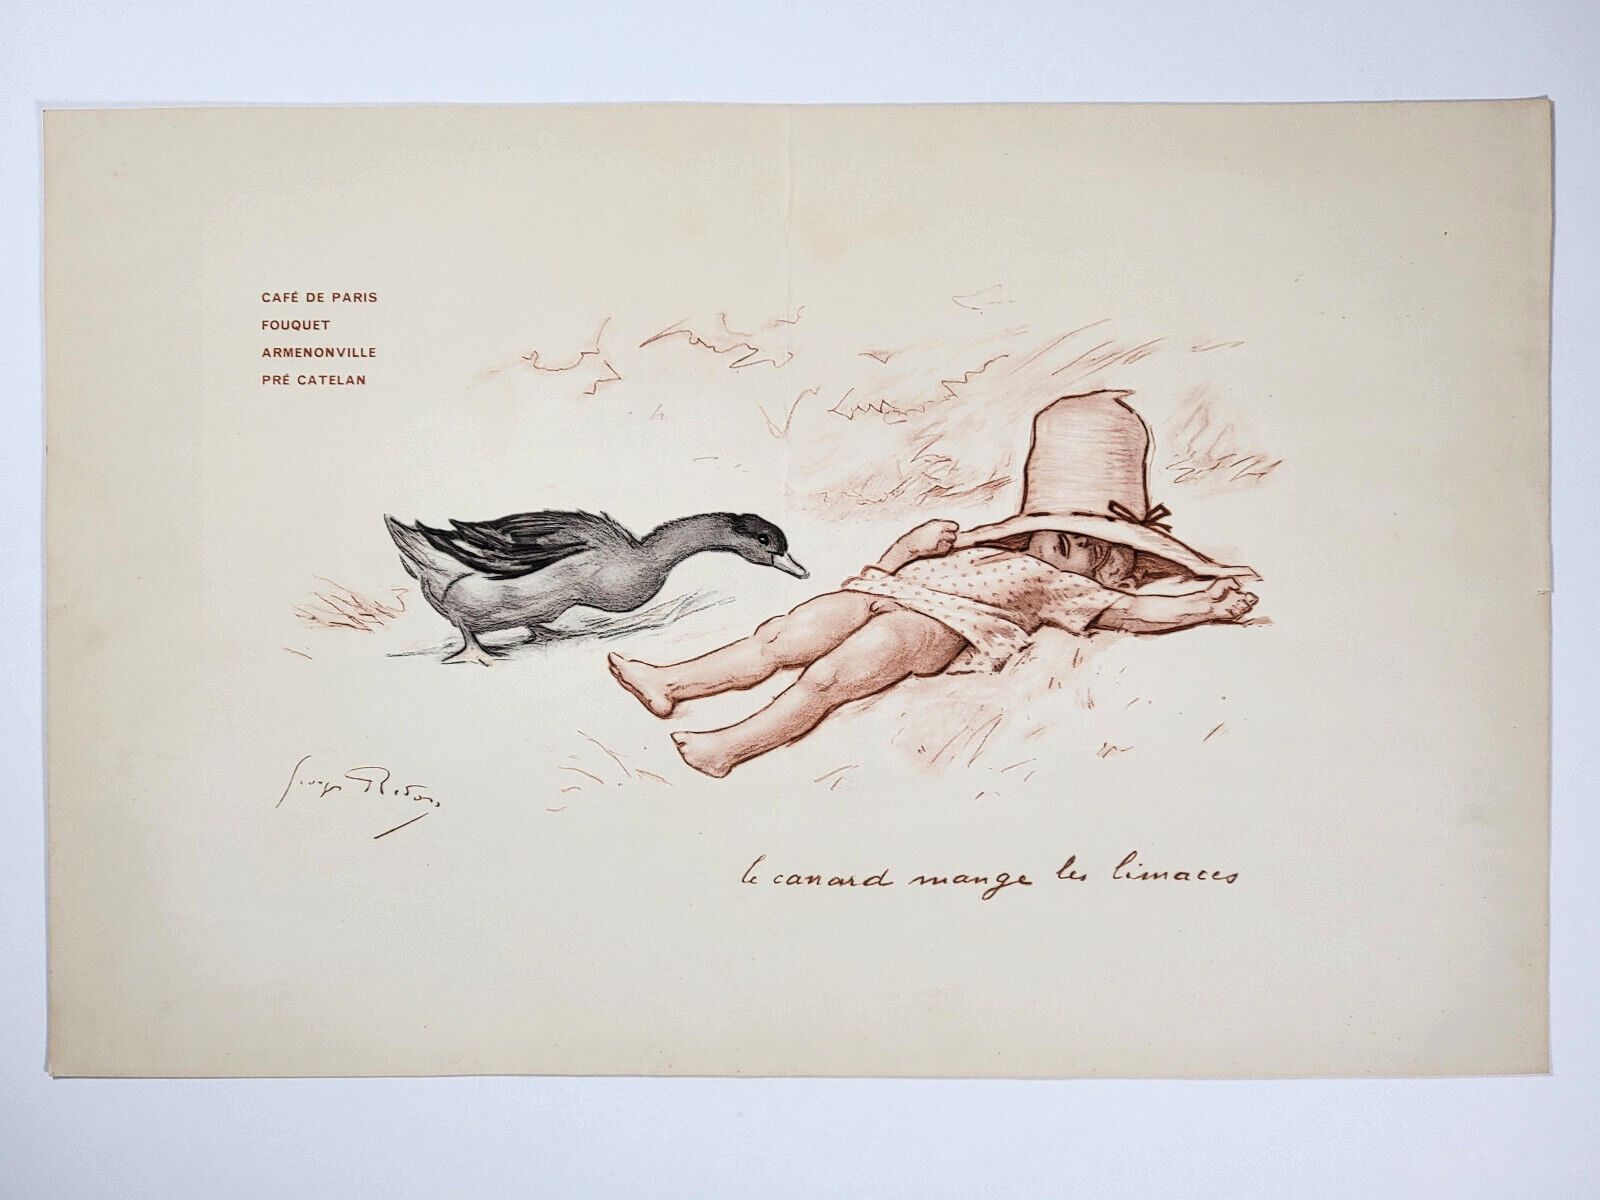 20 December 1950 Menu Fouquet's Café de Paris G. REDON garçon canard boy duck